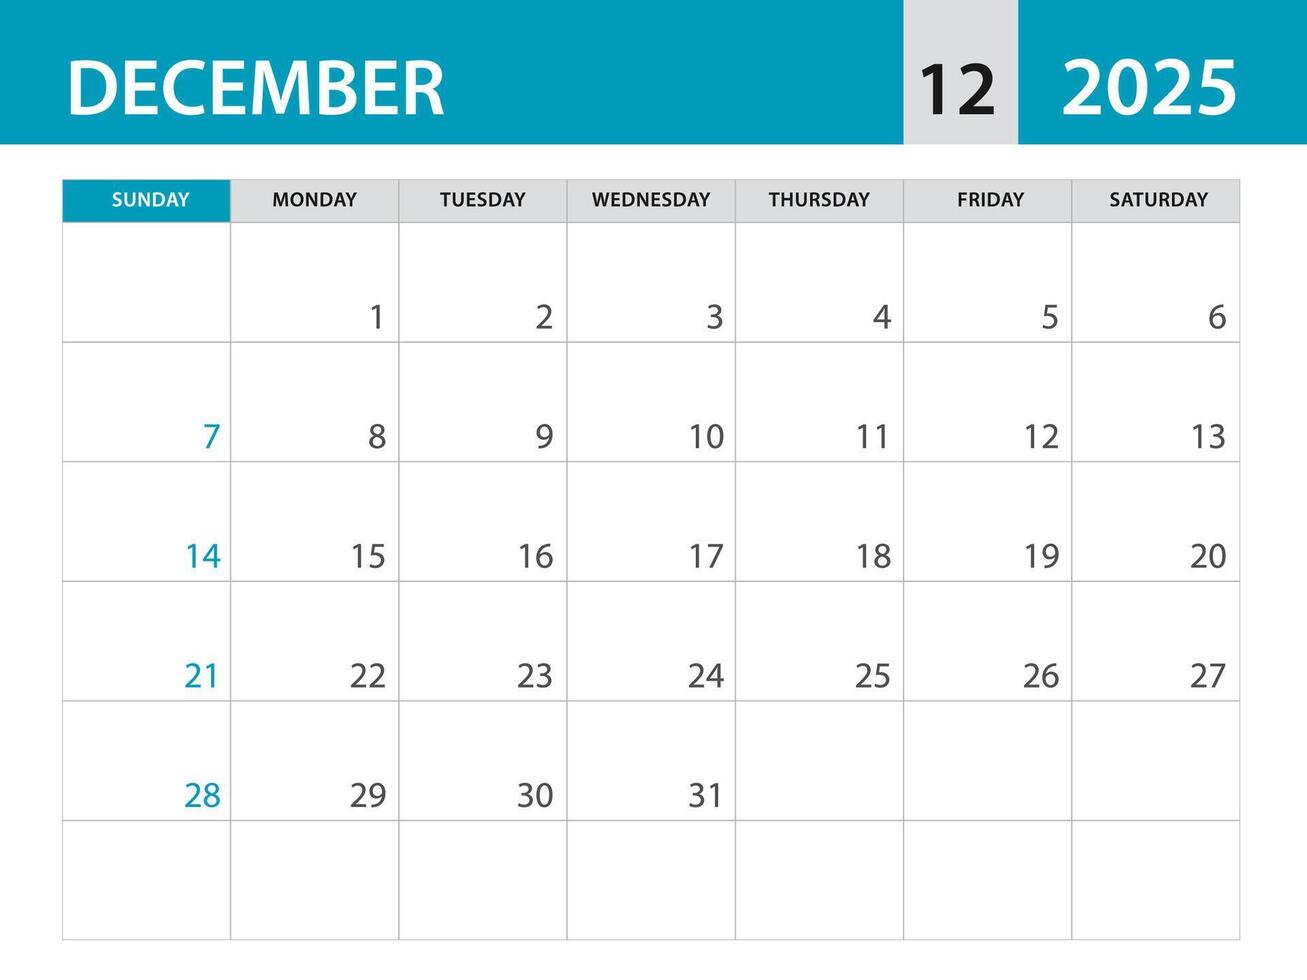 Dezember 2025 Vorlage - - Kalender 2025 Vorlage , Planer monatlich Design, Schreibtisch Kalender 2025, Mauer Kalender Design, minimal Stil, Werbung, Poster, Drucken Medien, Blau horizontal Layout vektor